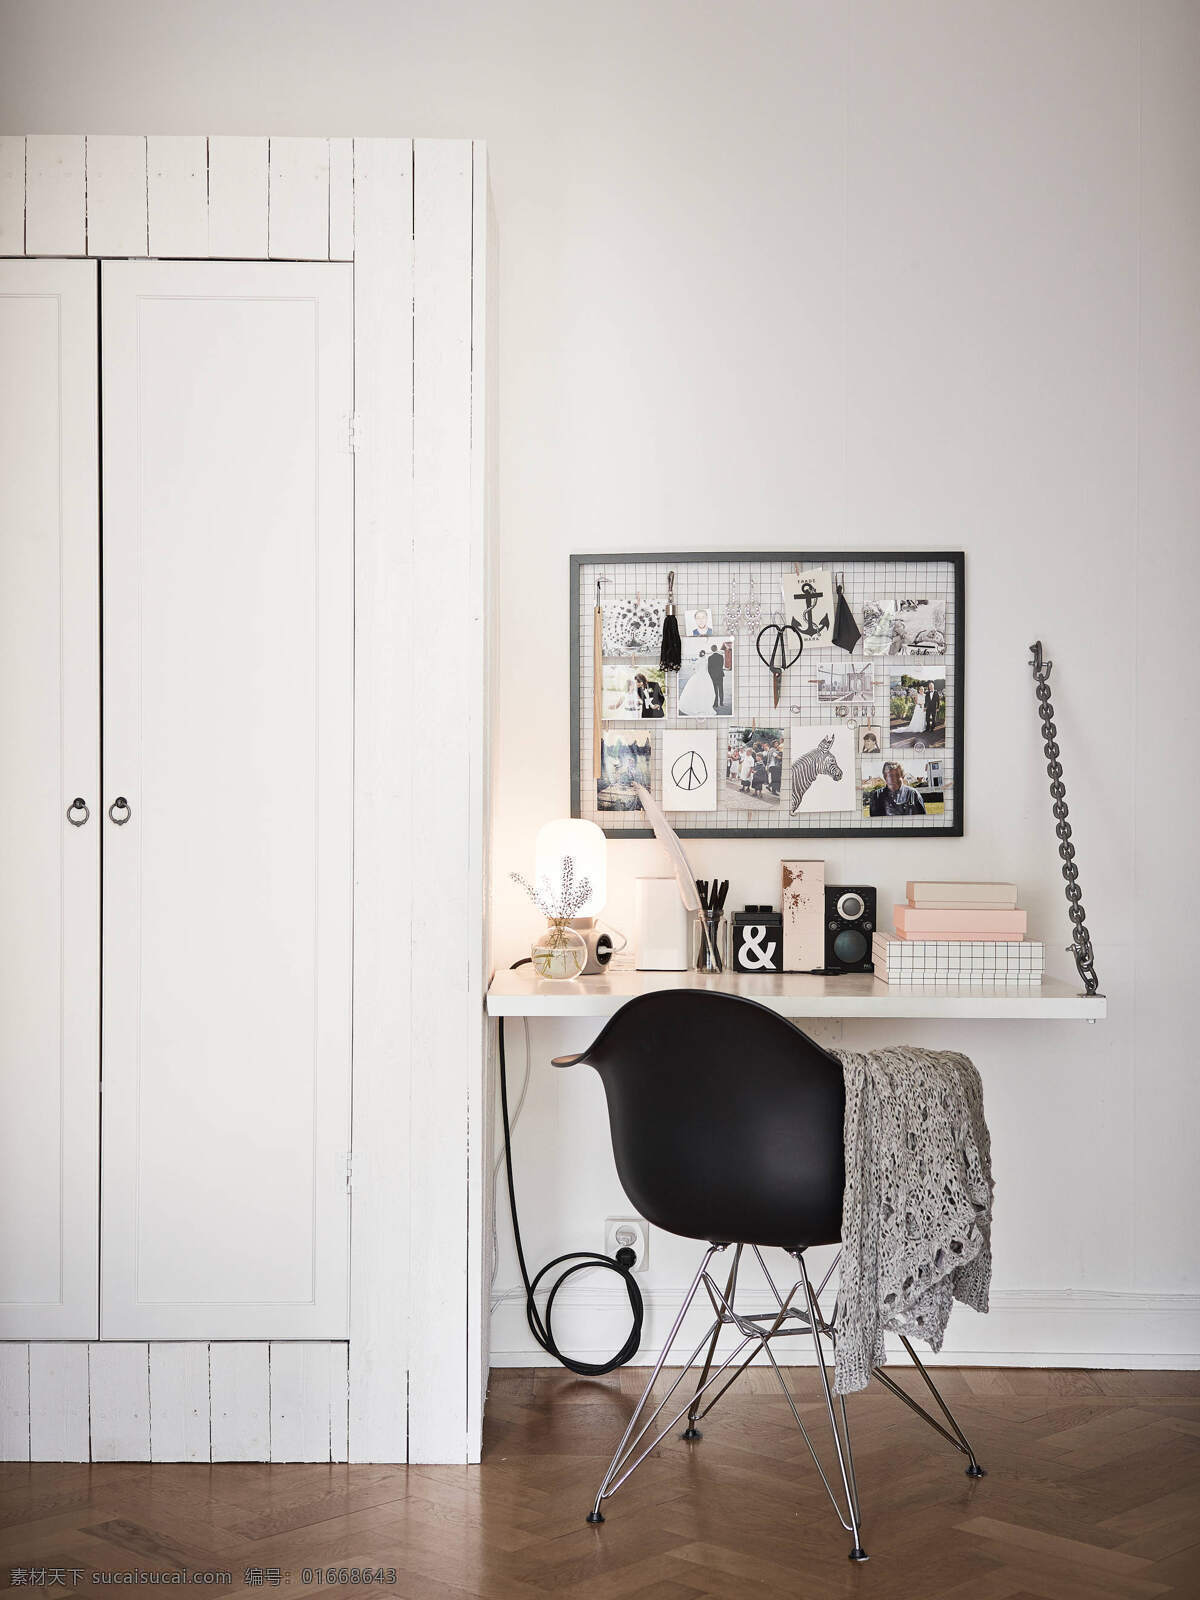 简约 卧室 梳妆台 装修 效果图 木地板 白色衣柜 白色墙壁 简易椅子